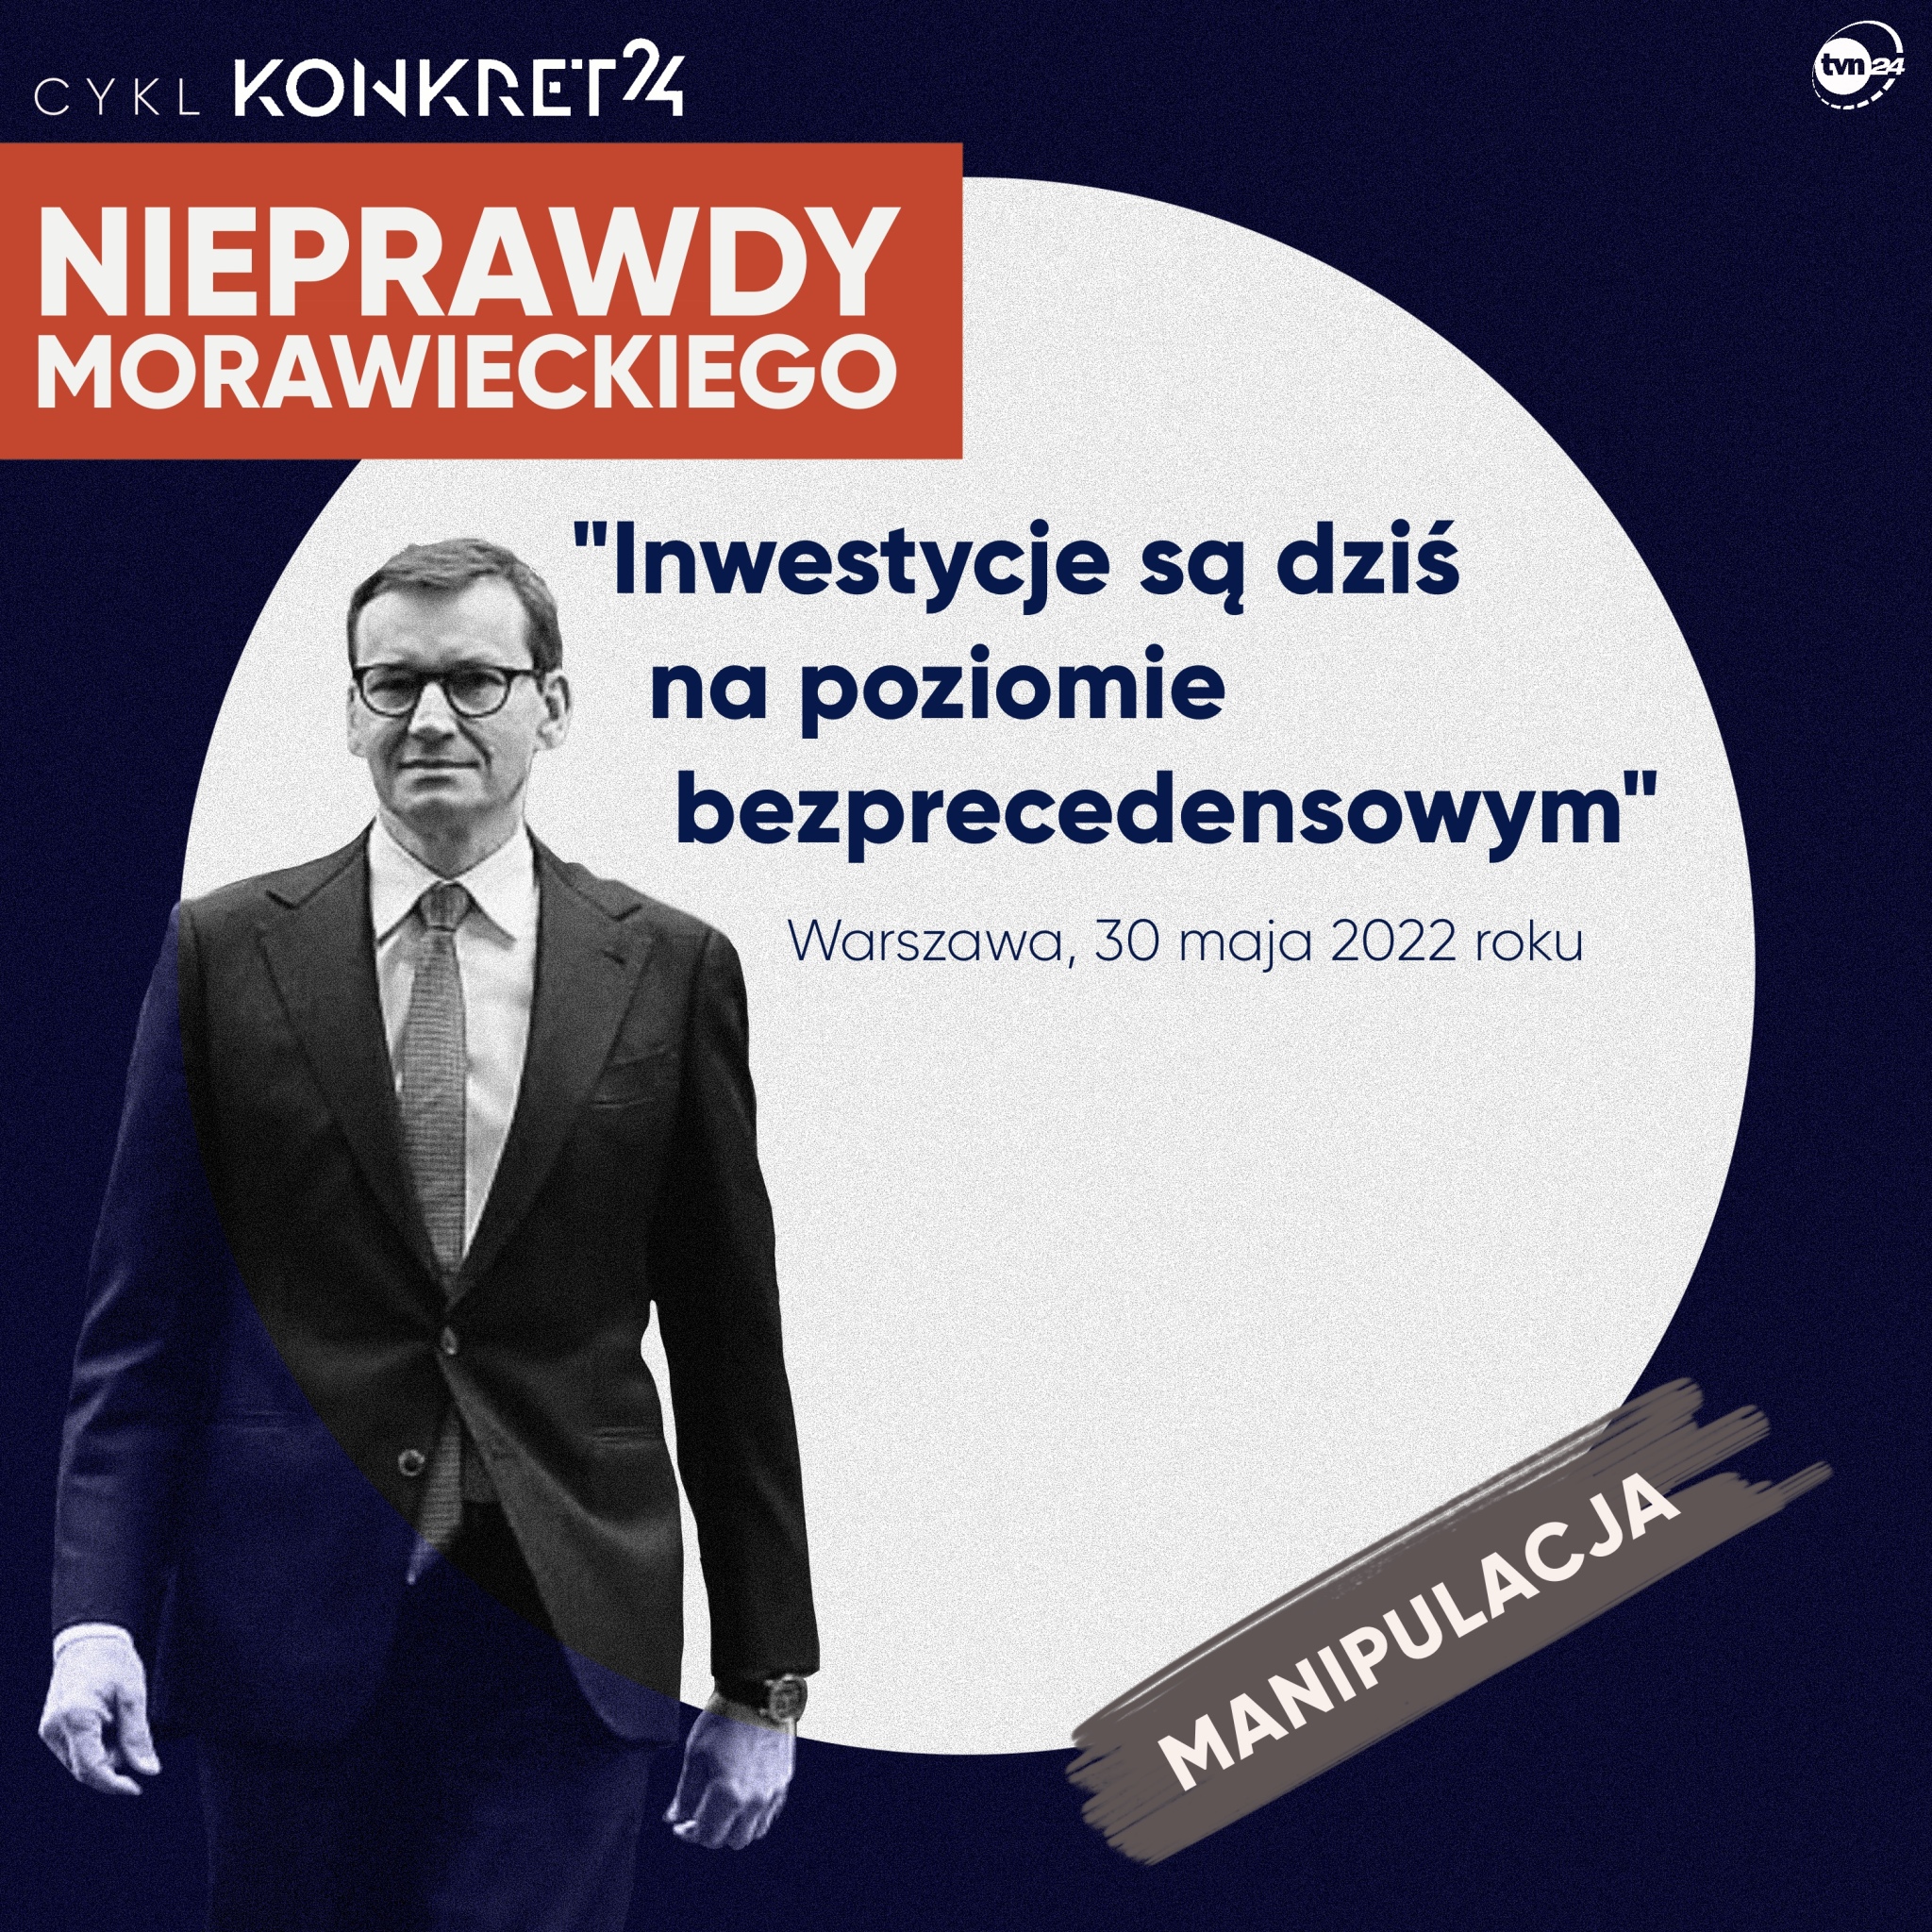 Mateusz Morawiecki o inwestycjach. Nieprawdy premiera Morawieckiego (część V)